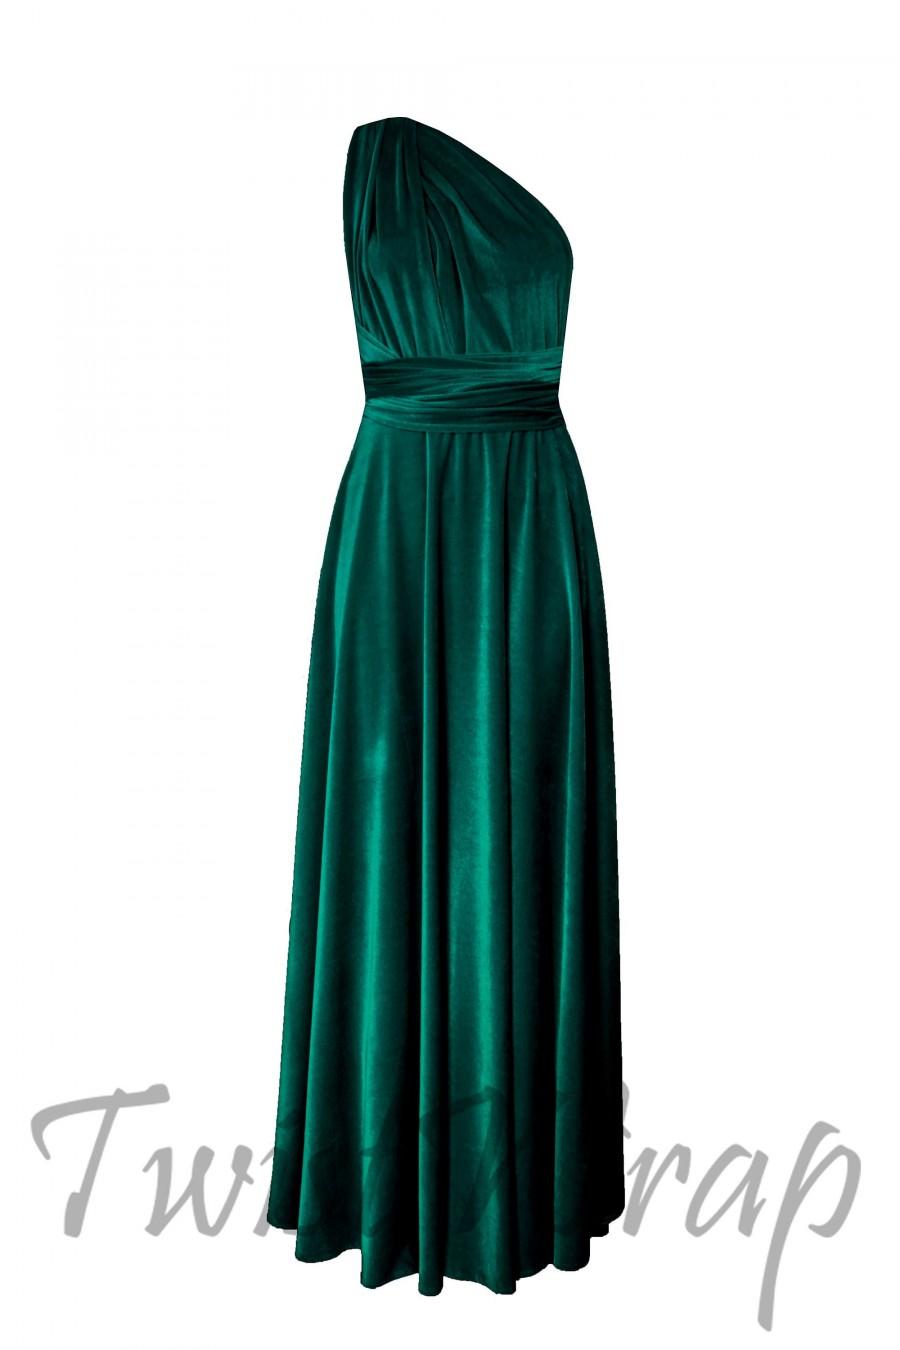 زفاف - Velvet Dress Dark Green Infinity Dress Bridesmaids Dress Long Convertible Dress Formal Maternity Dress Plus Size Prom Dress